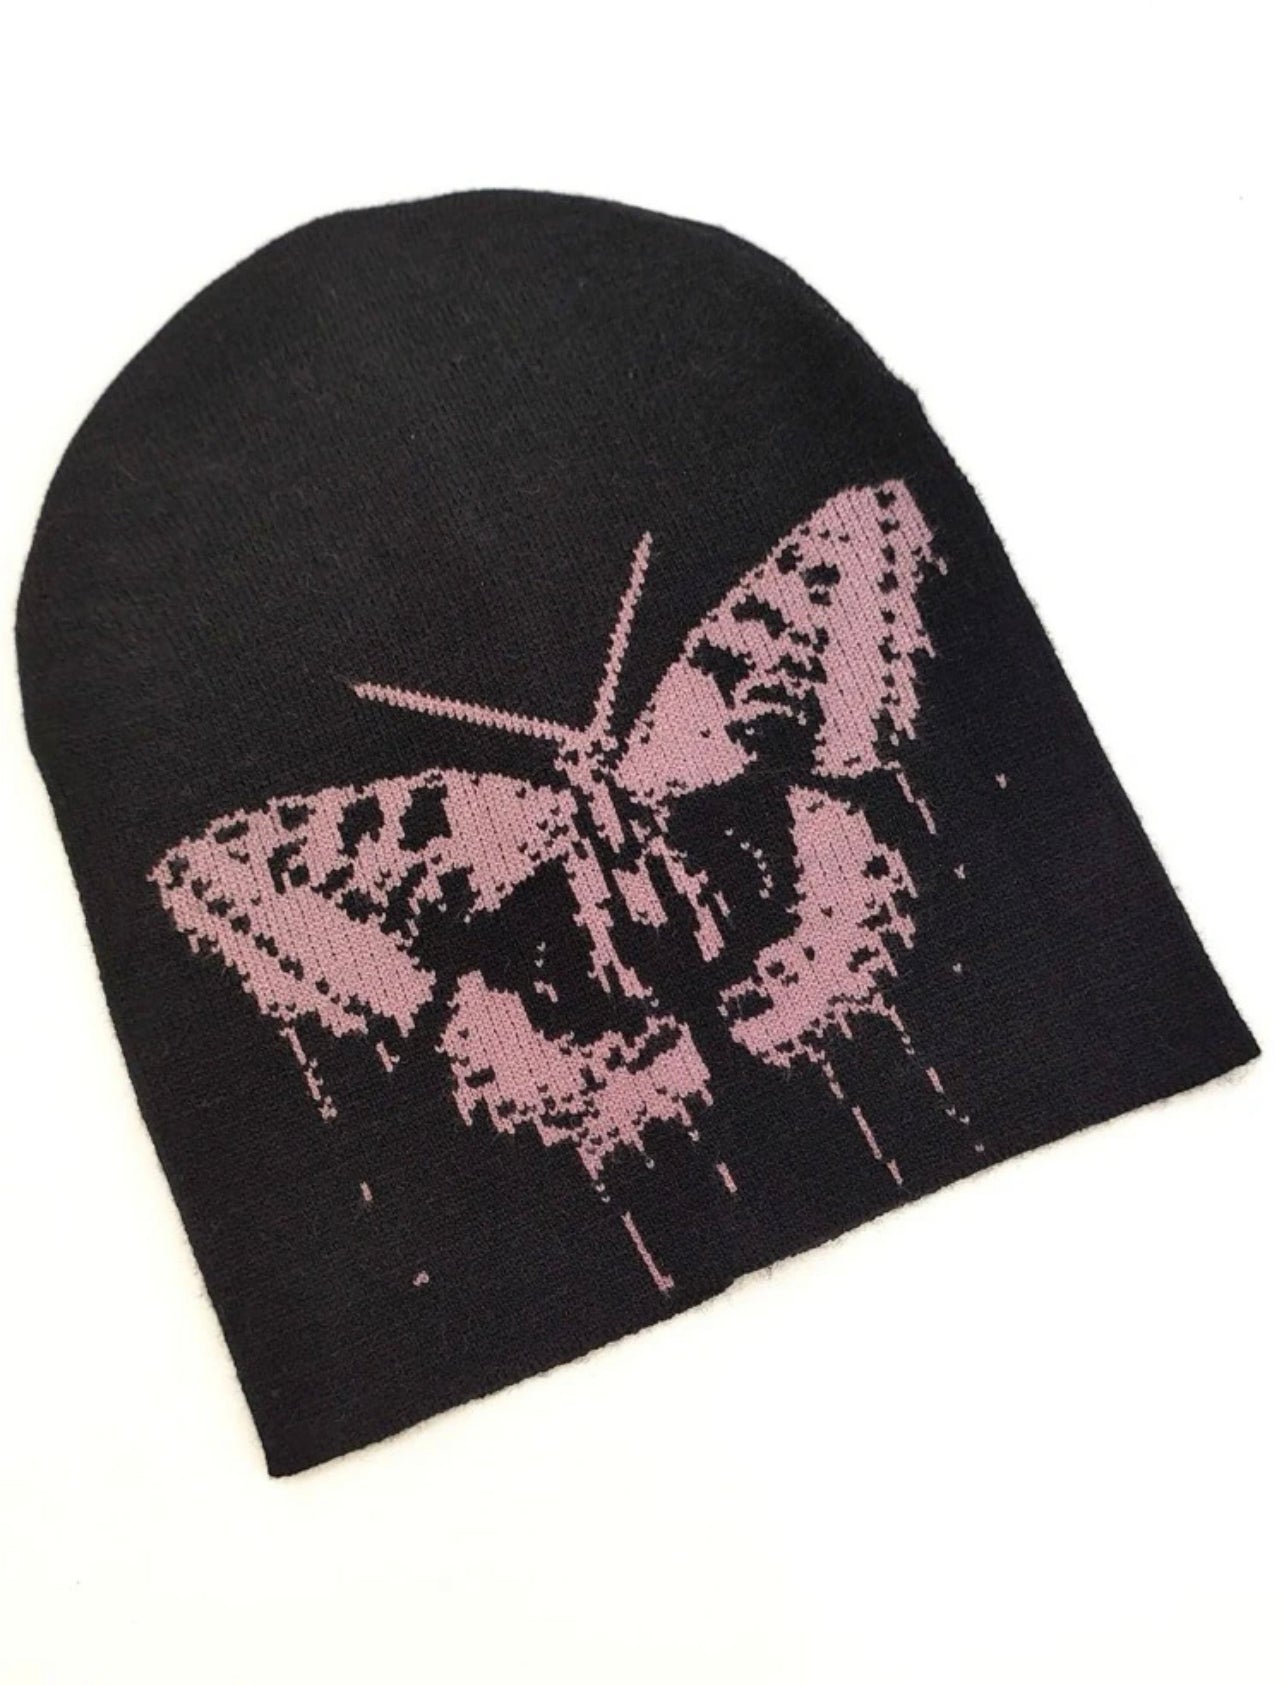 Butterfly Pattern Beanie in black